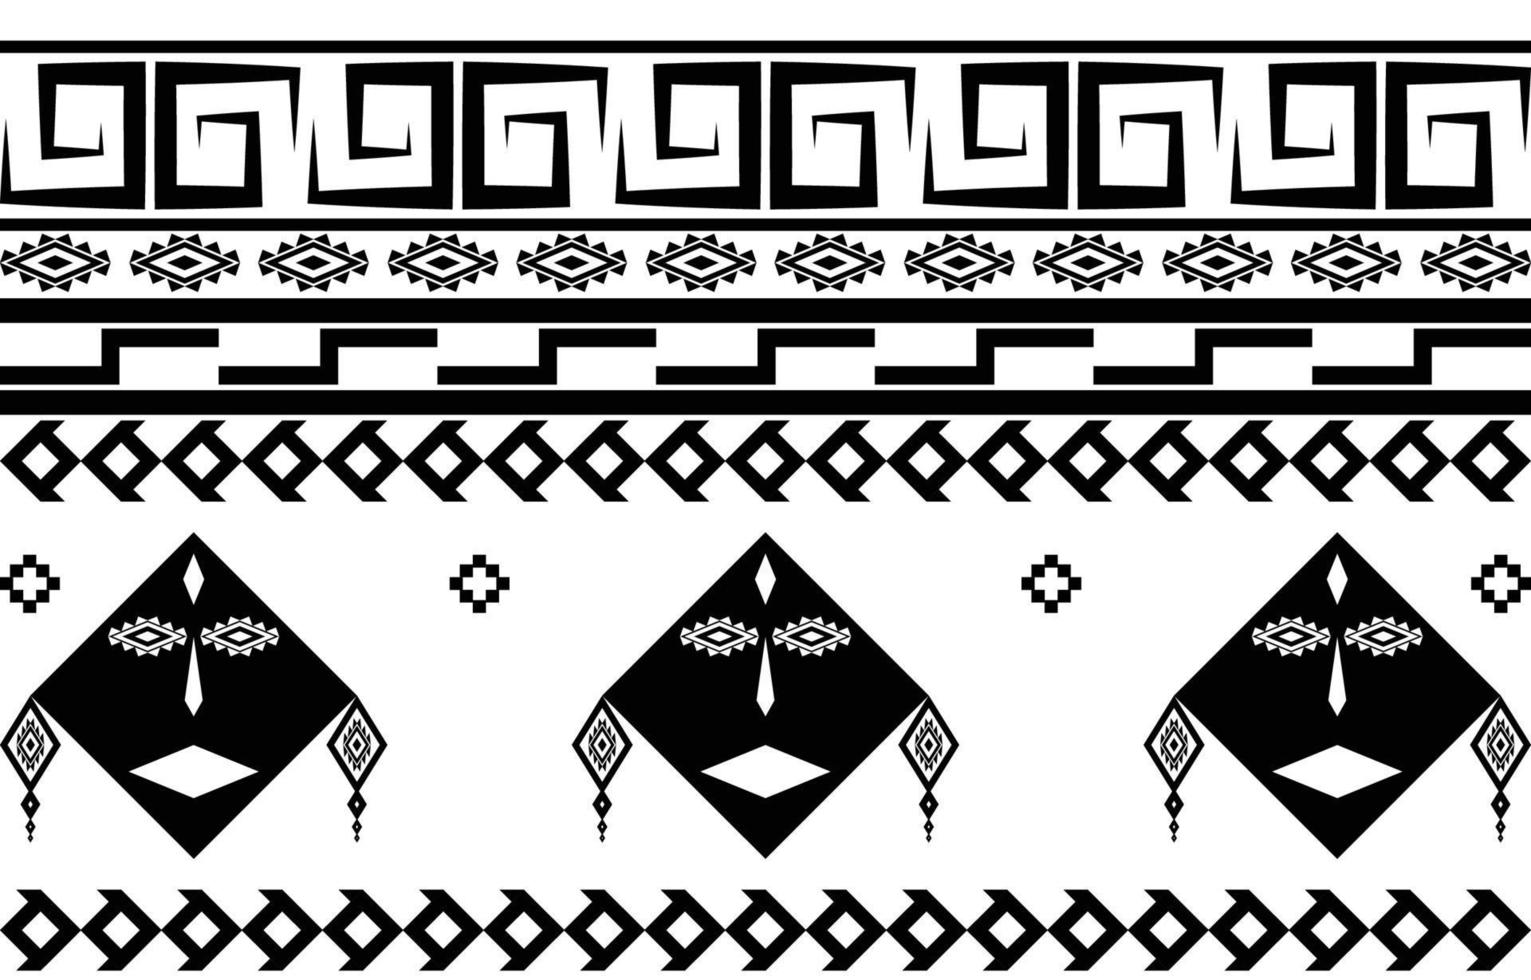 Tribal gezicht zwart-wit abstracte etnische geometrische patroon ontwerp voor achtergrond of wallpaper.vector illustratie om stof patronen, tapijten, shirts, kostuums, tulband, hoeden, gordijnen af te drukken. vector